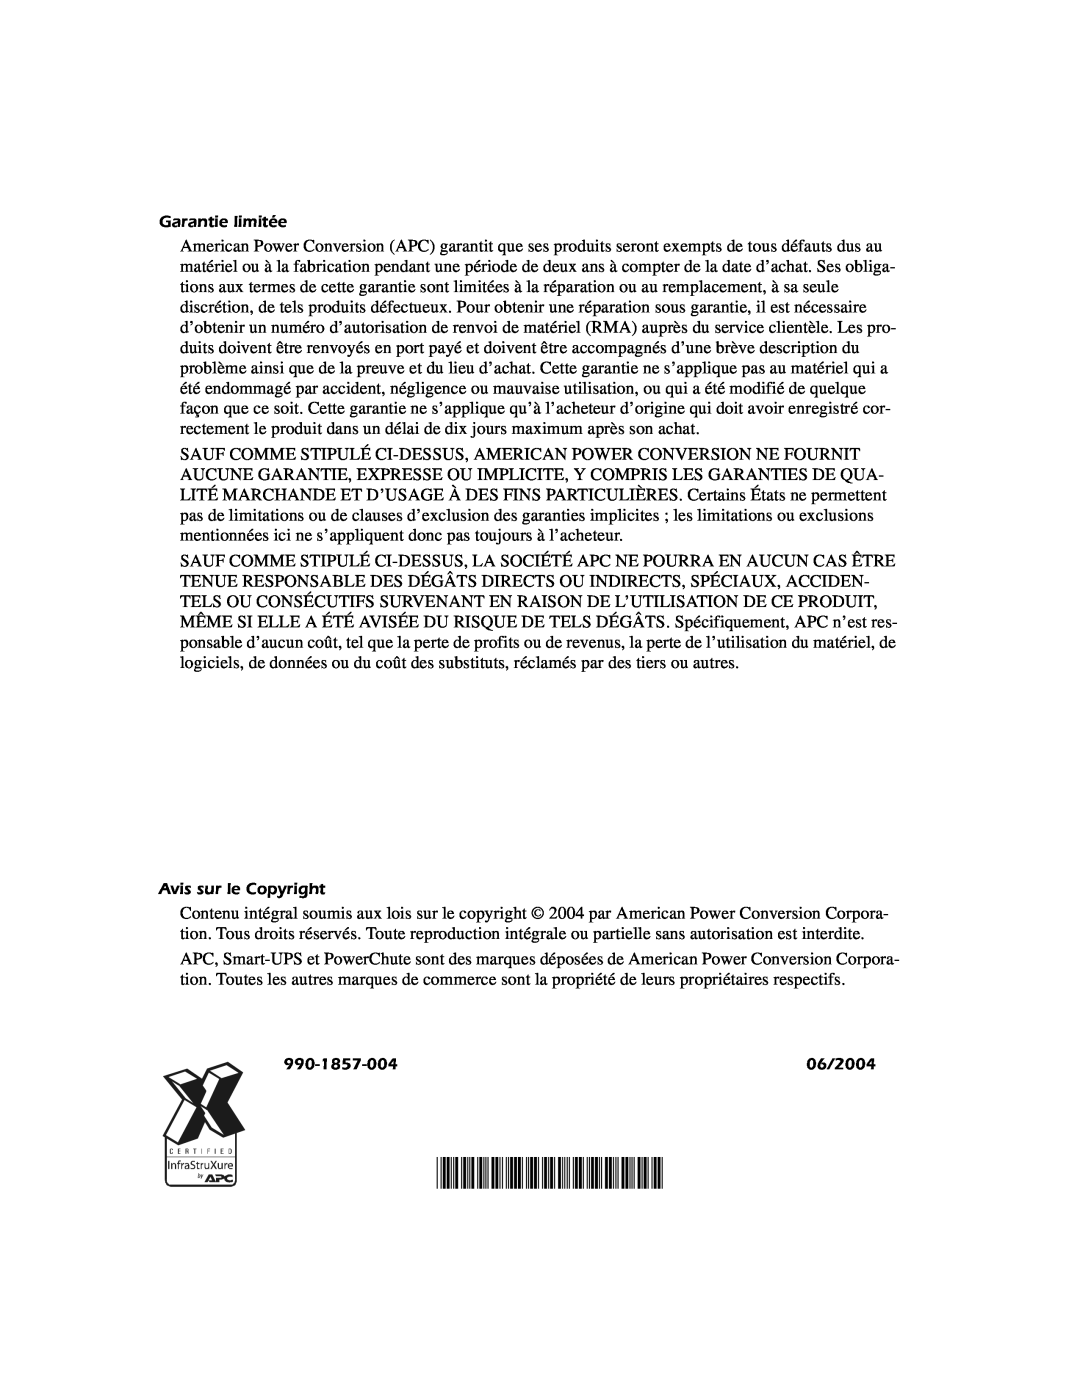 APC SURTA48XLBP manual 990-1857-004, Garantie limitée, Avis sur le Copyright, 06/2004 